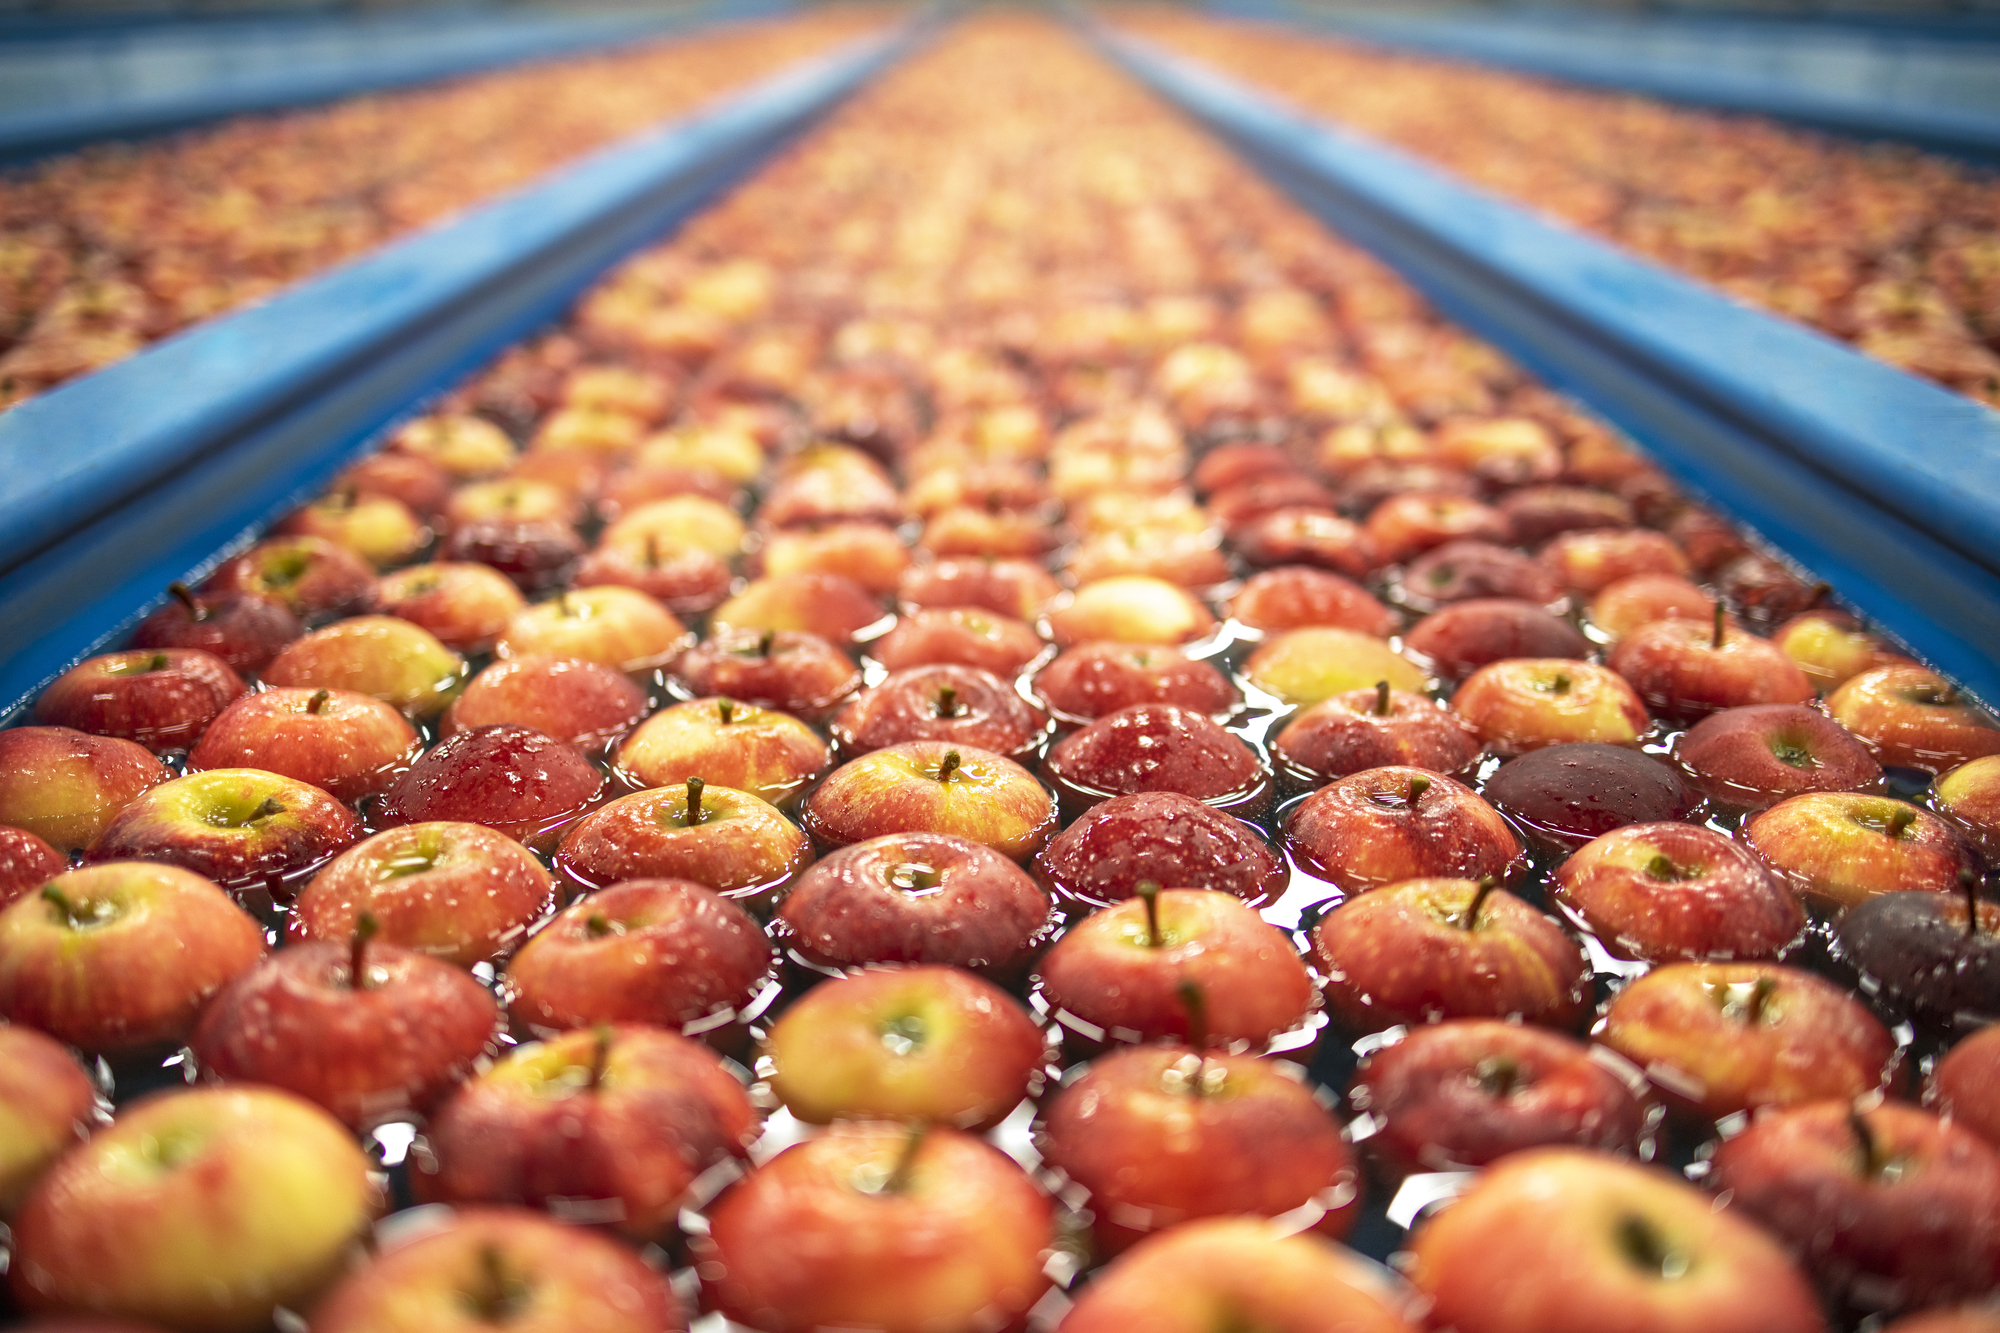 Impianto di lavorazione mele, nastro trasportatore con acqua; concept: bollini compostabili